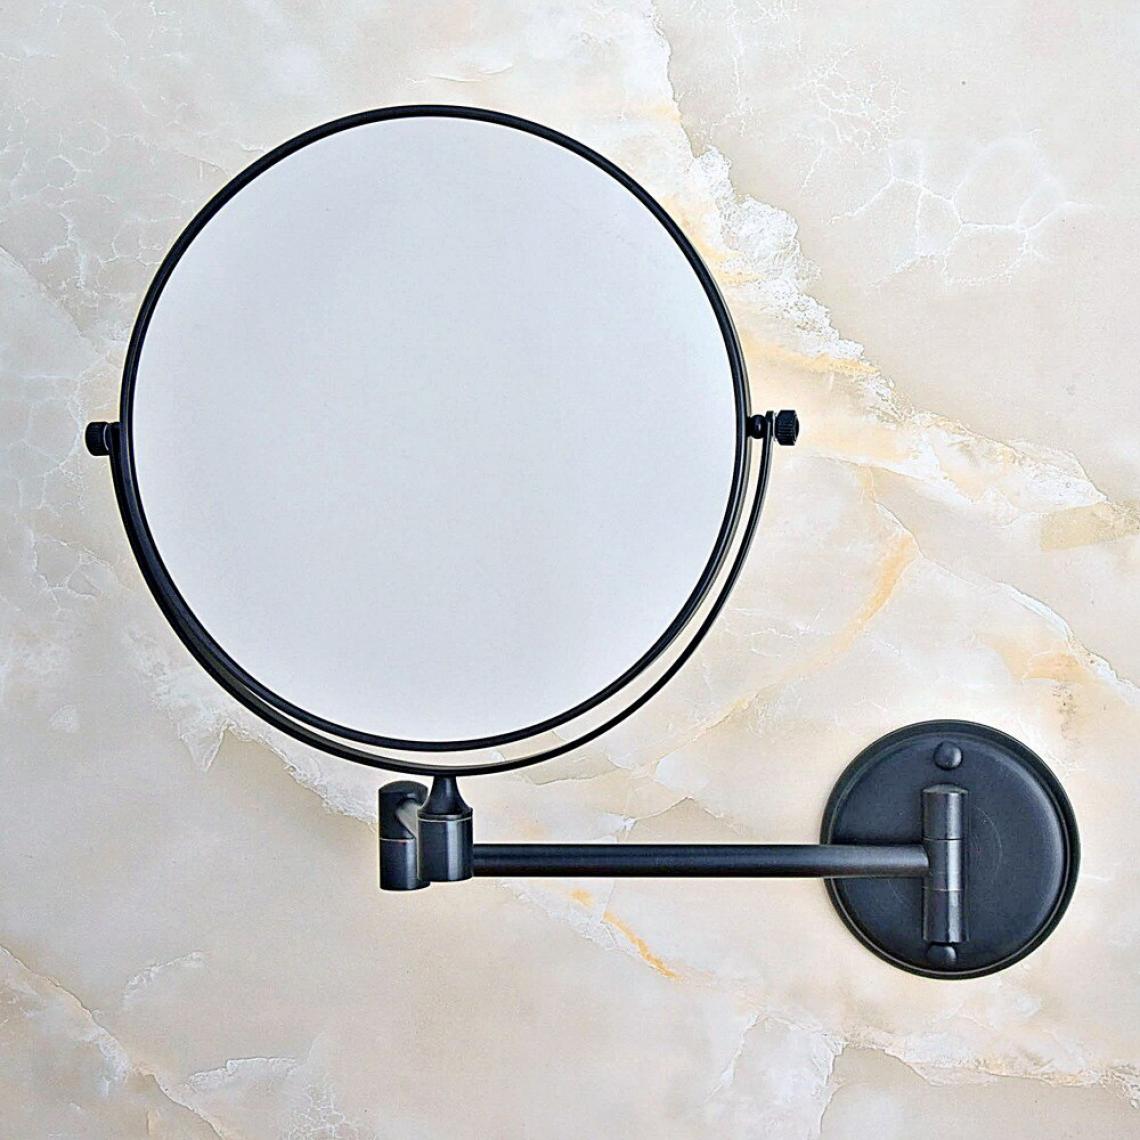 Universal - Huile noire friction laiton salle de bains rasage beauté miroir double latéral mural/accessoires de salle de bains |(Le noir) - Miroir de salle de bain